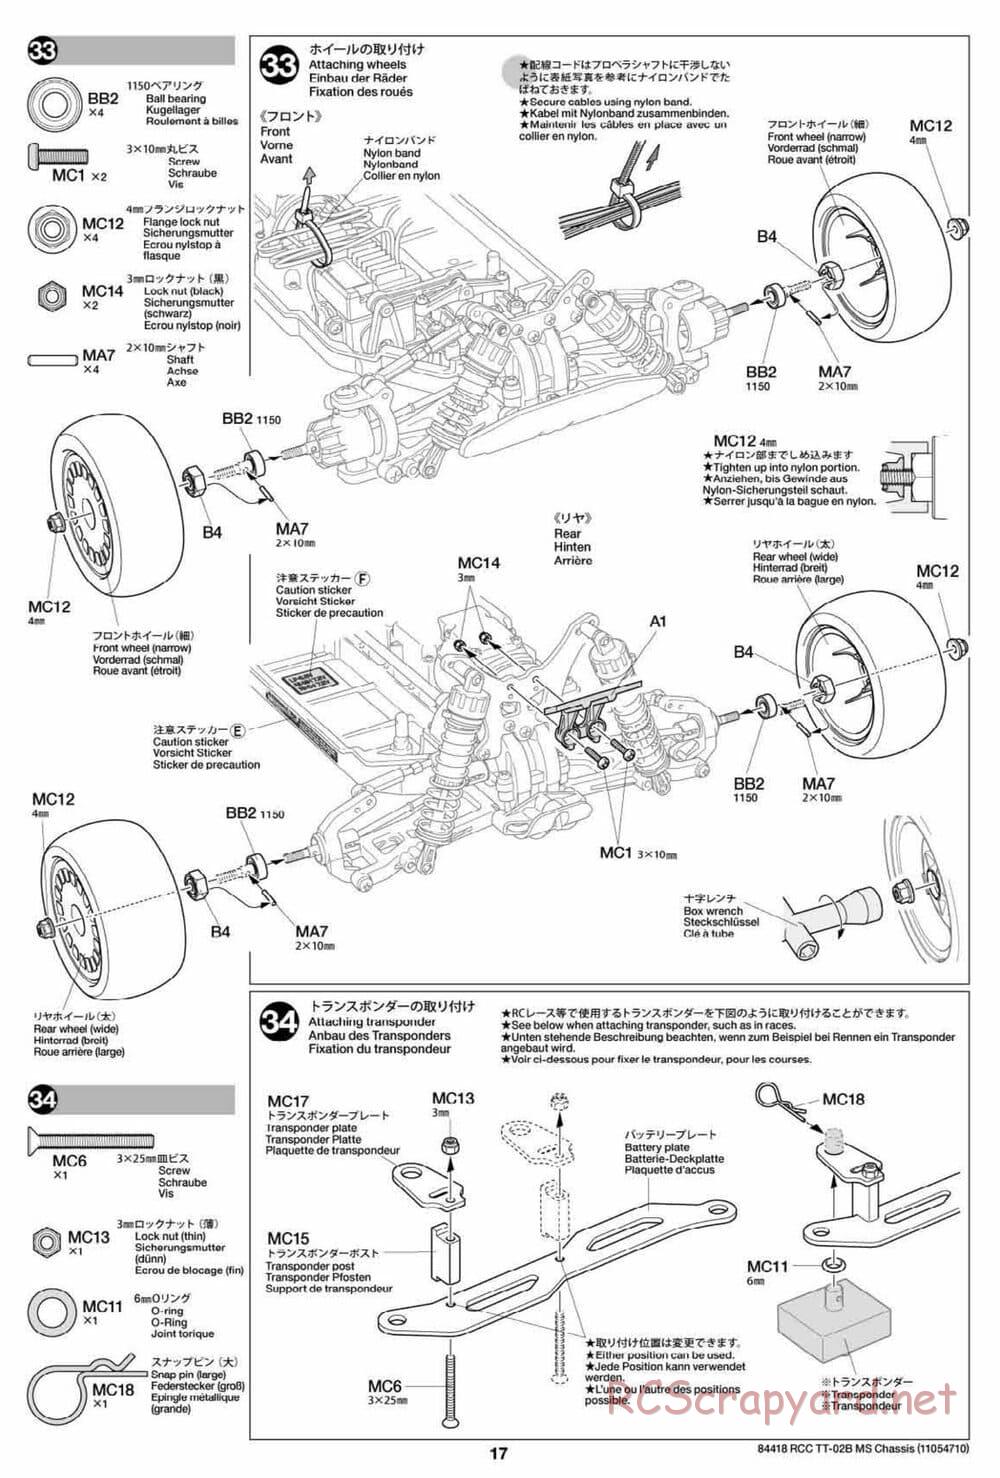 Tamiya - TT-02B MS Chassis - Manual - Page 17